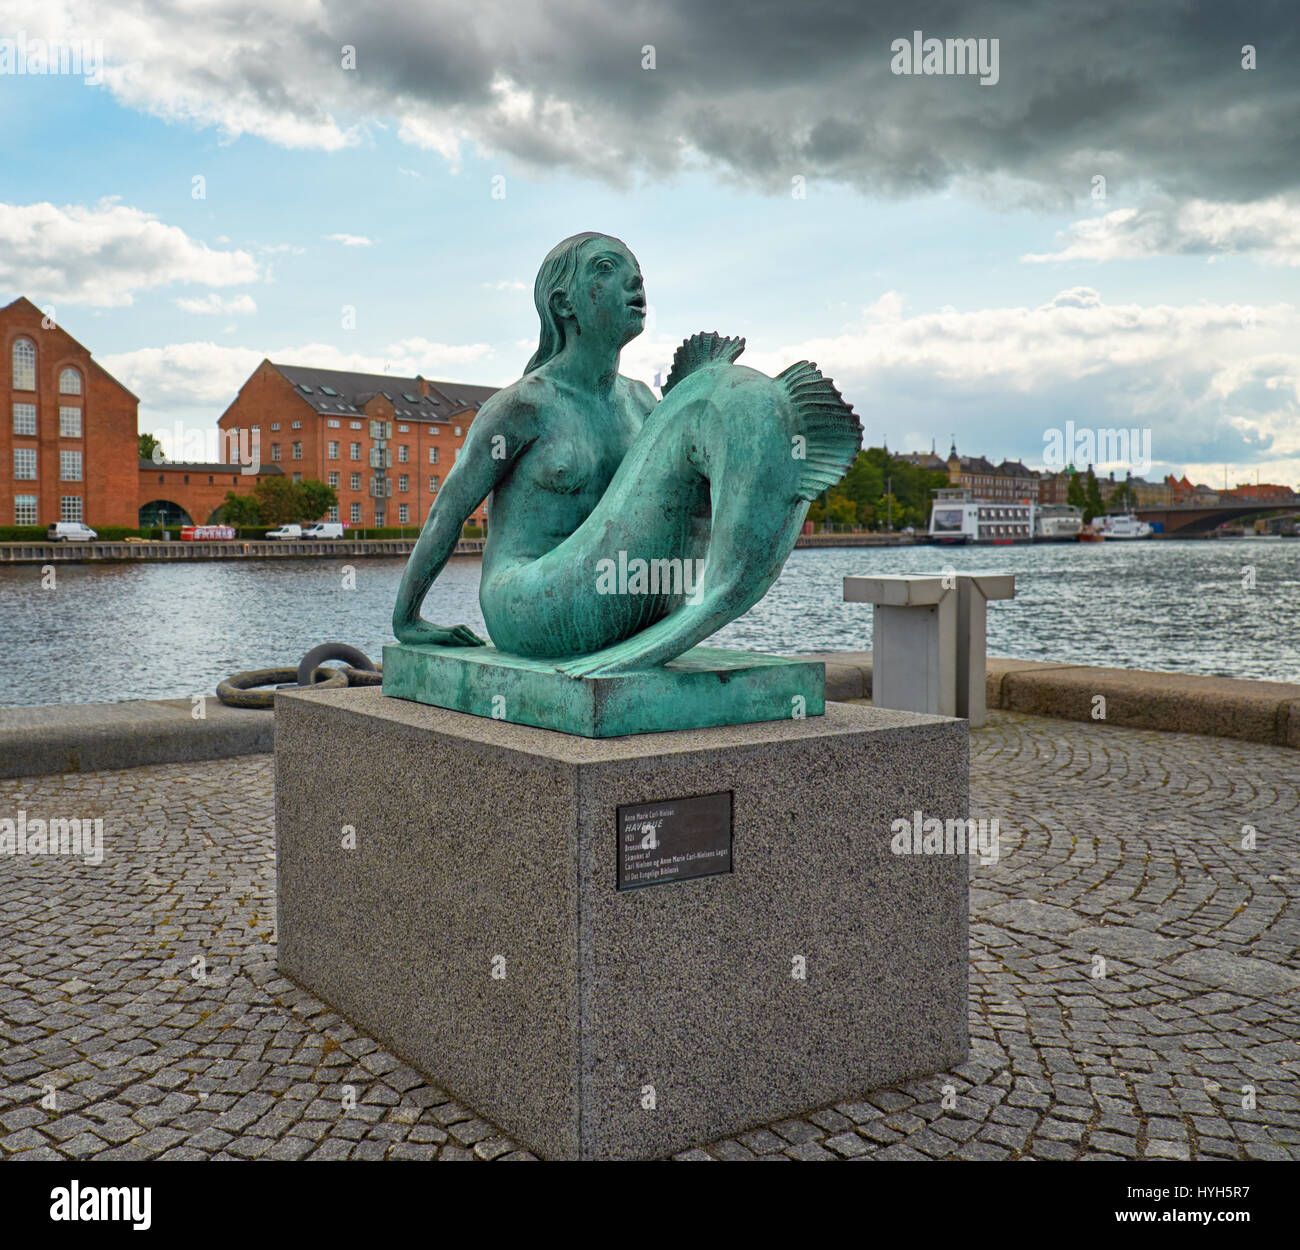 Copenhague, Danemark - 22 août 2014 : la copie en bronze de la statue de sirène Anne Marie Carl-Nielsen en face du Havre principal près de 'The Black Diam Banque D'Images